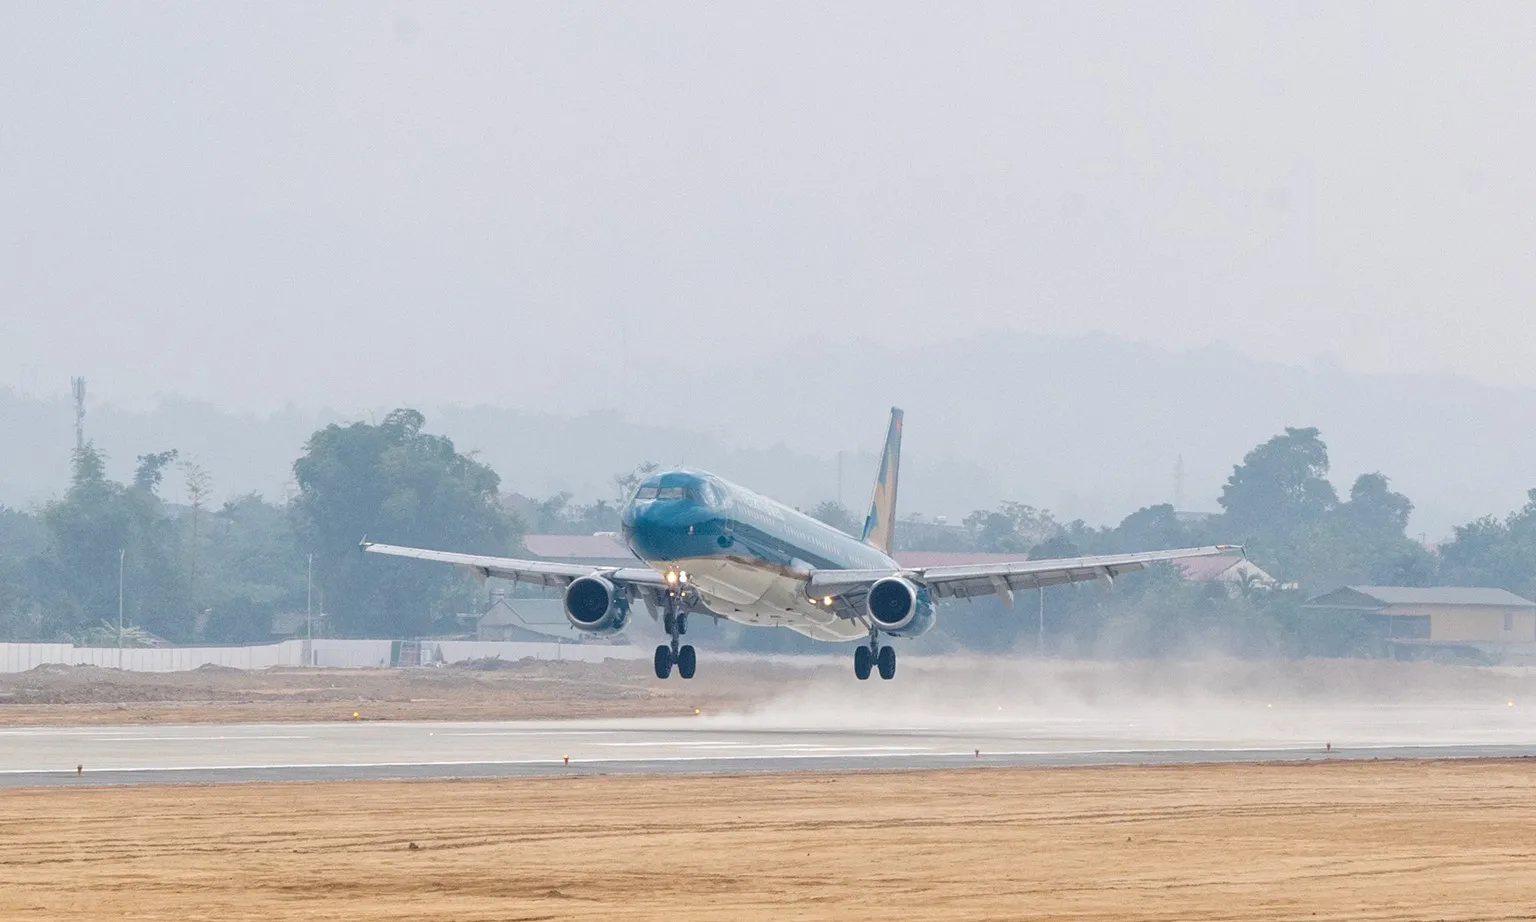 Hàng không tăng chuyến bay đến Điện Biên dịp Kỷ niệm 70 năm chiến thắng Điện Biên Phủ